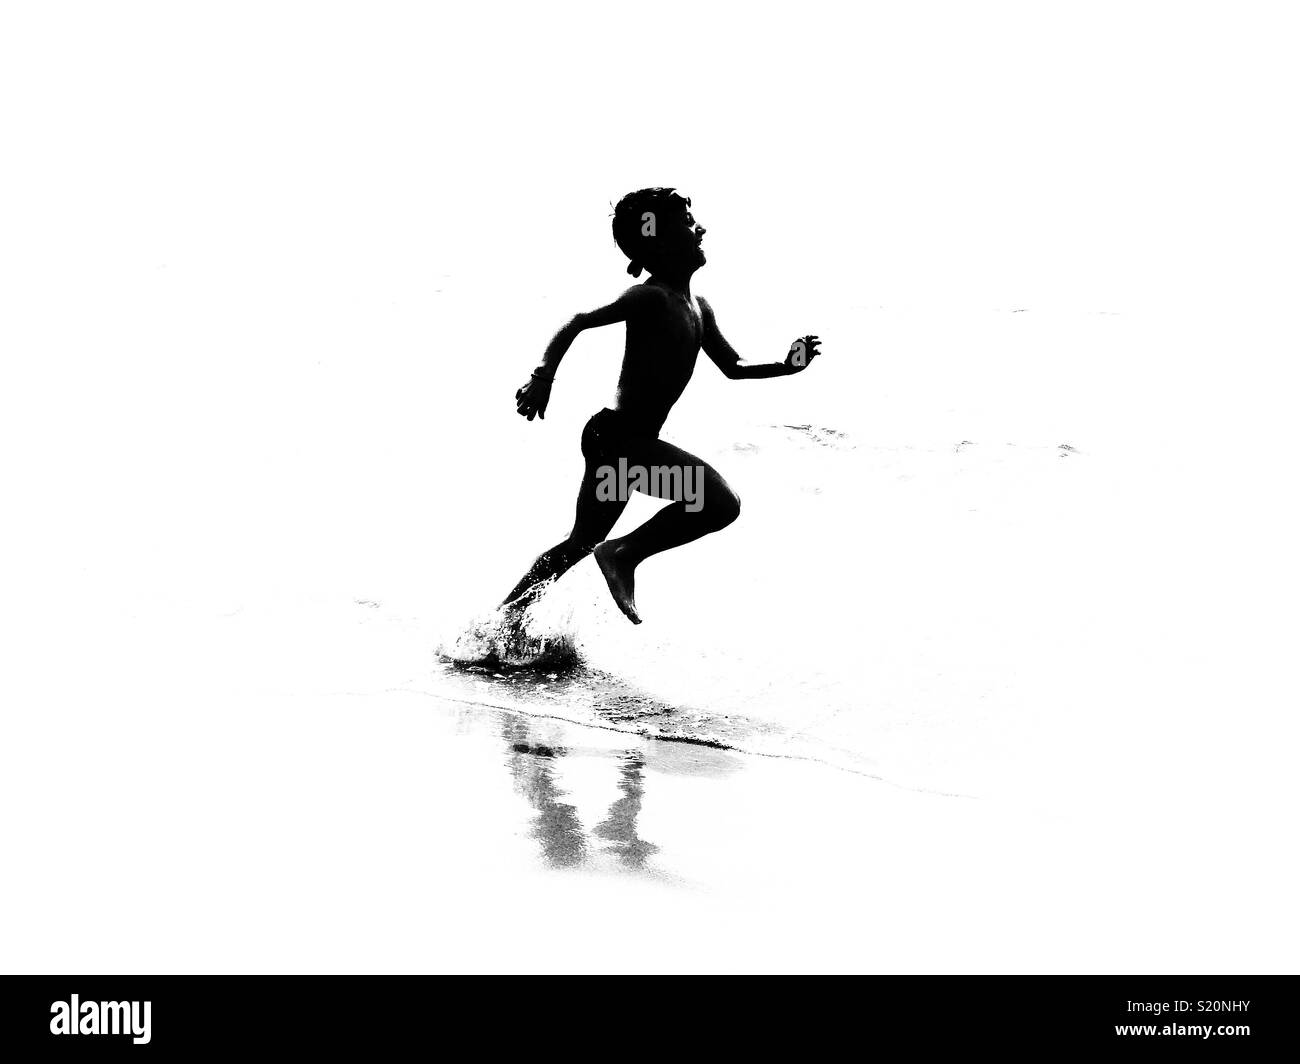 Junge ruuning am Strand. Silhouette Schwarz und Weiß Stockfoto